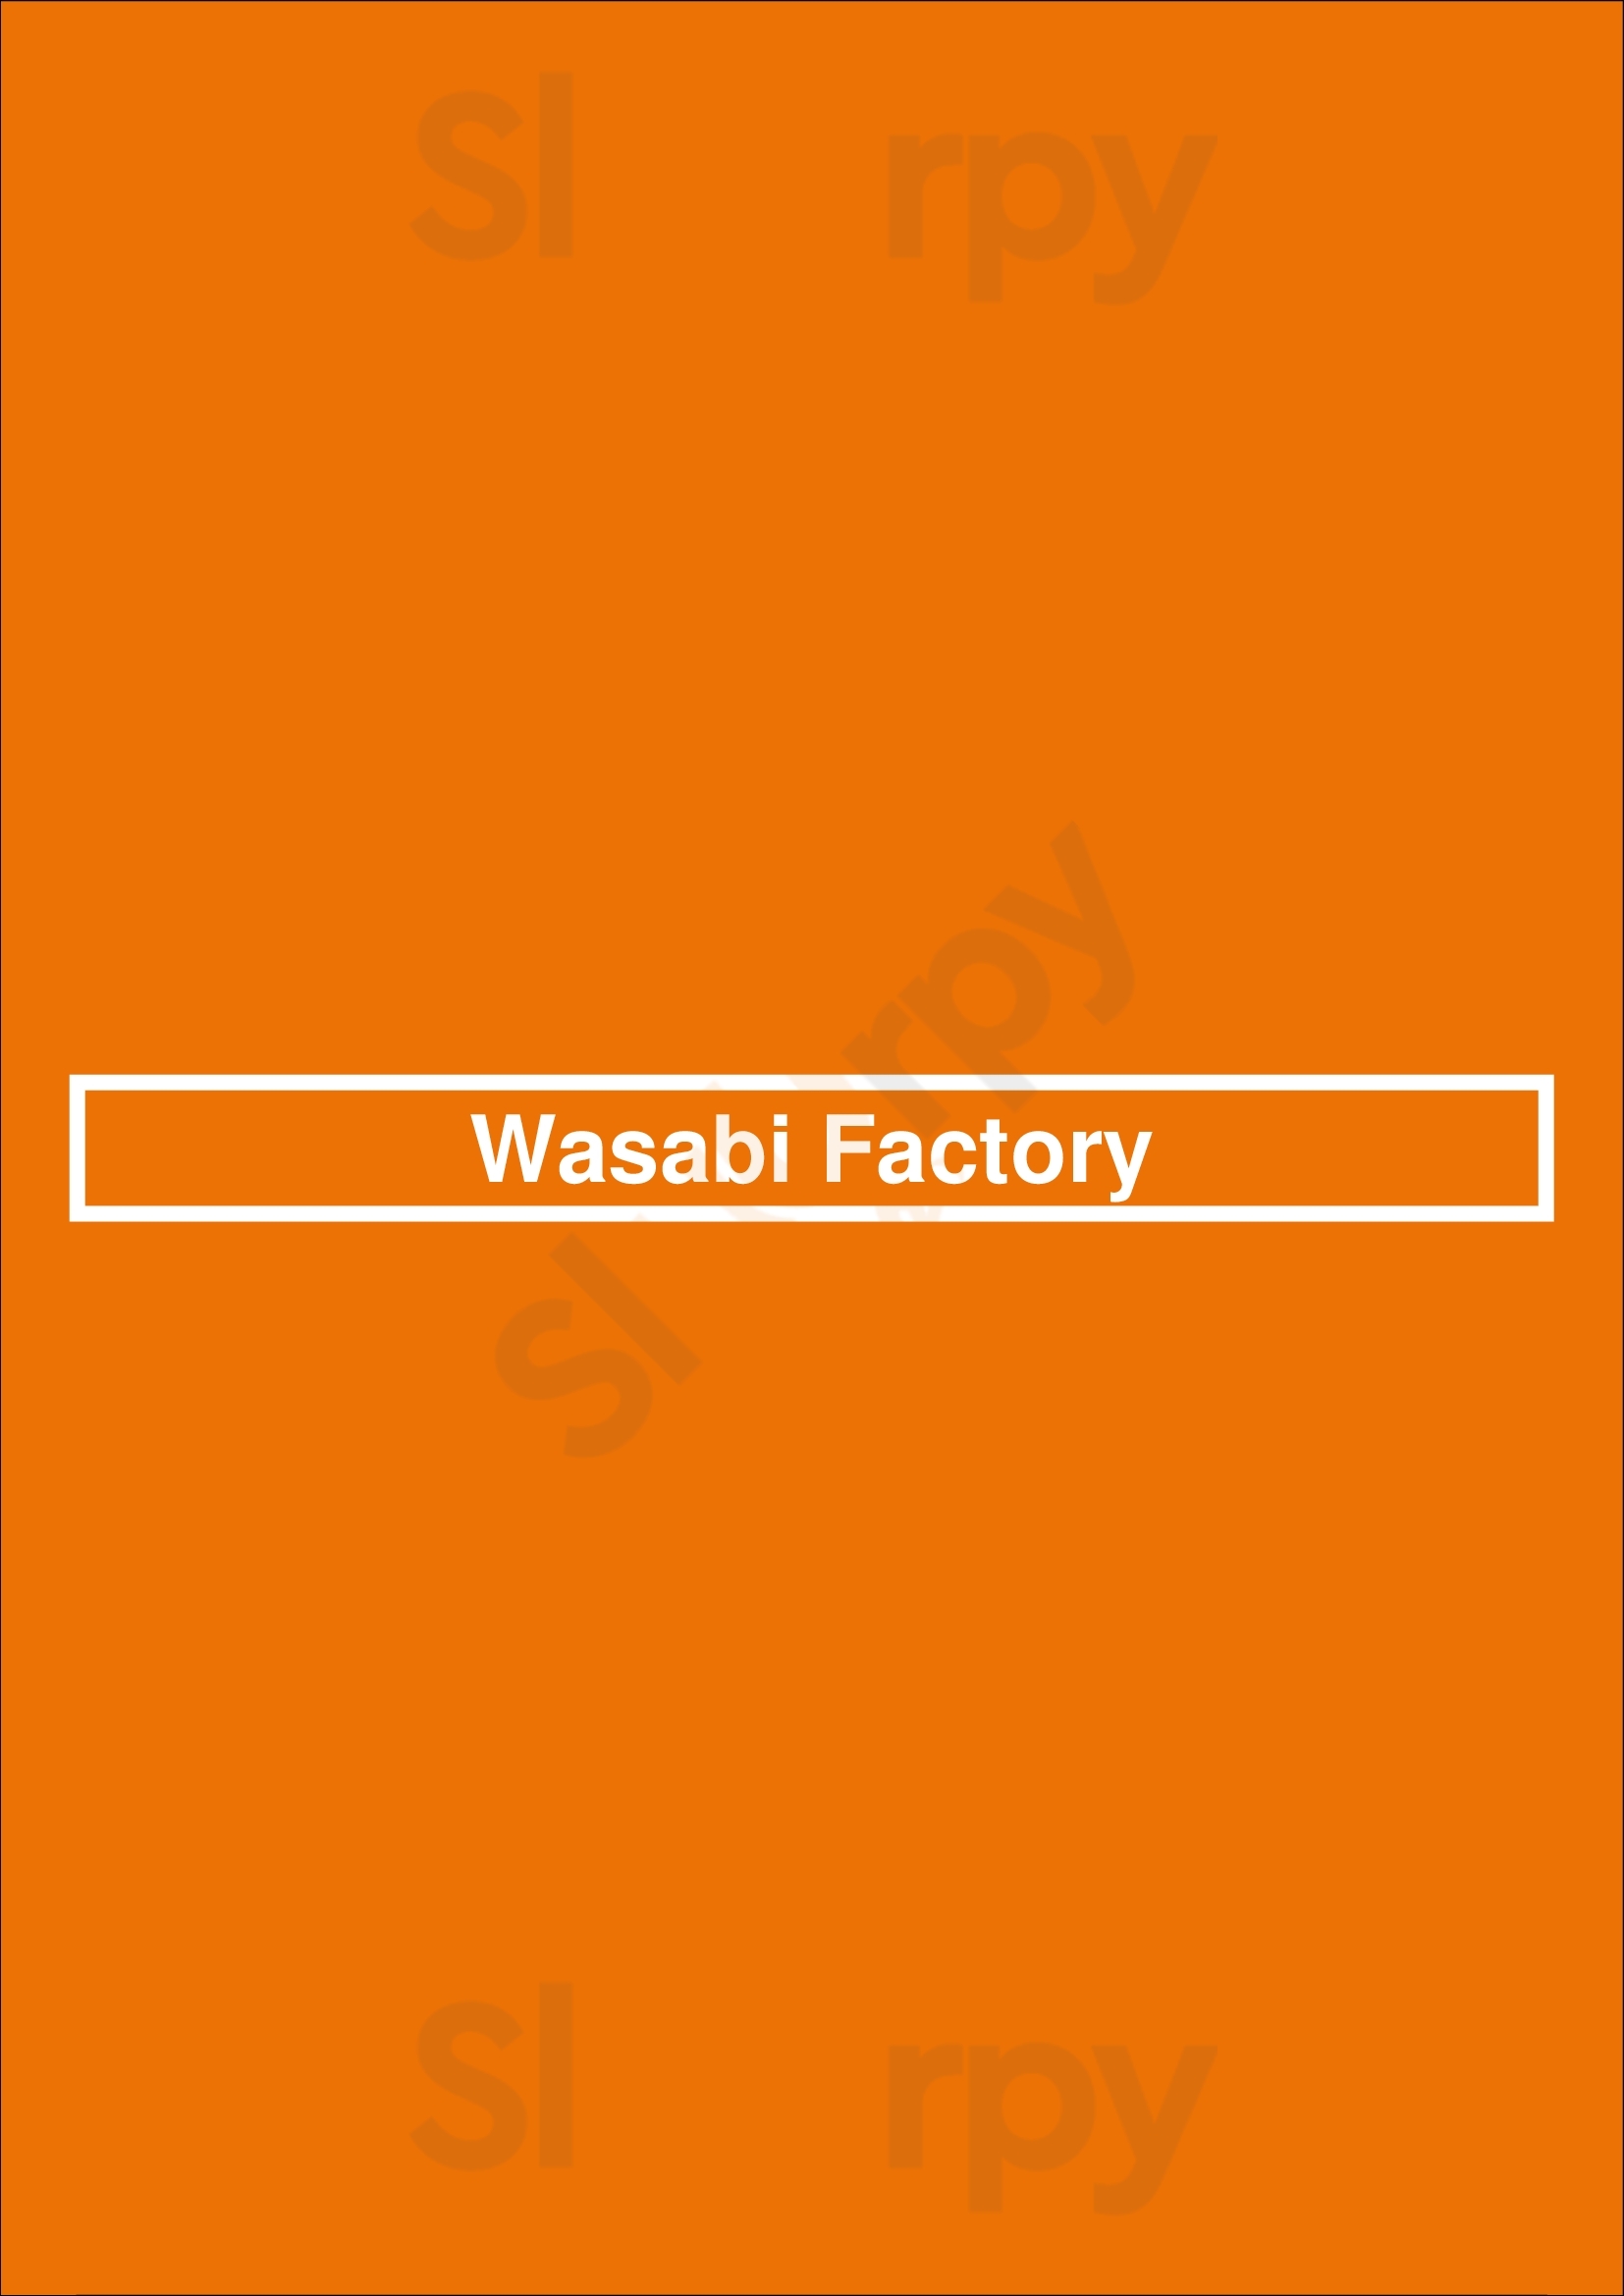 Wasabi Factory Everett Menu - 1